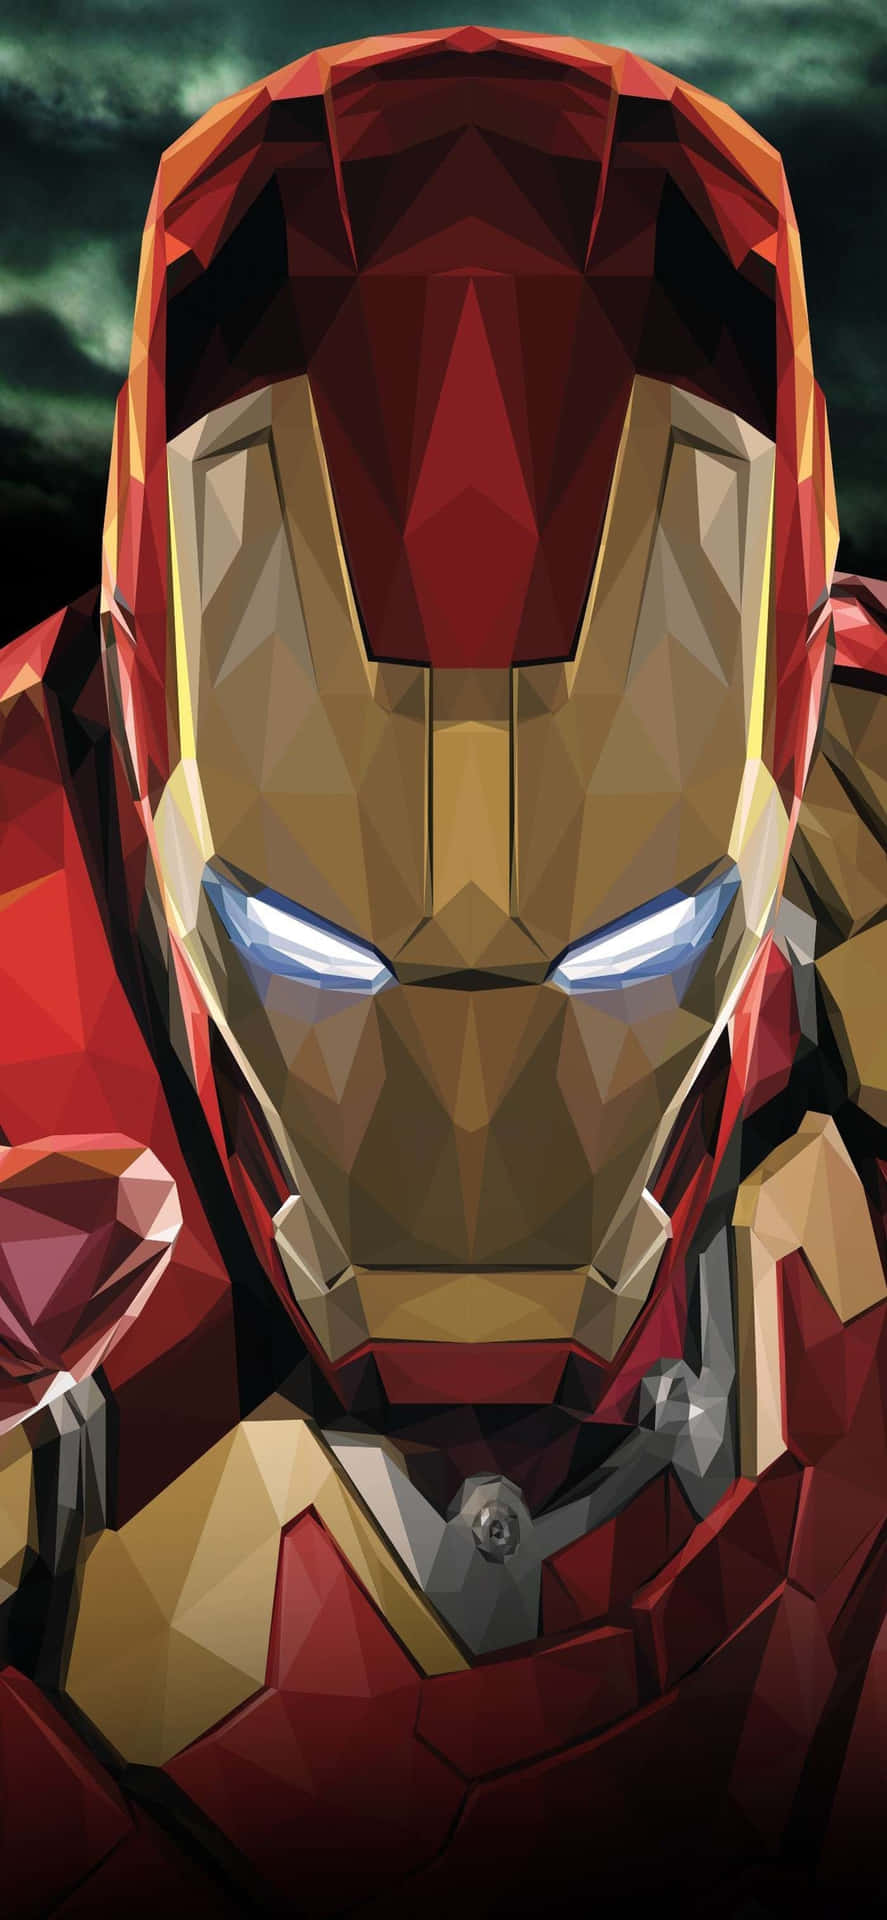 Iphonex Hintergrund Iron Man Scharfes Und Glänzendes Design